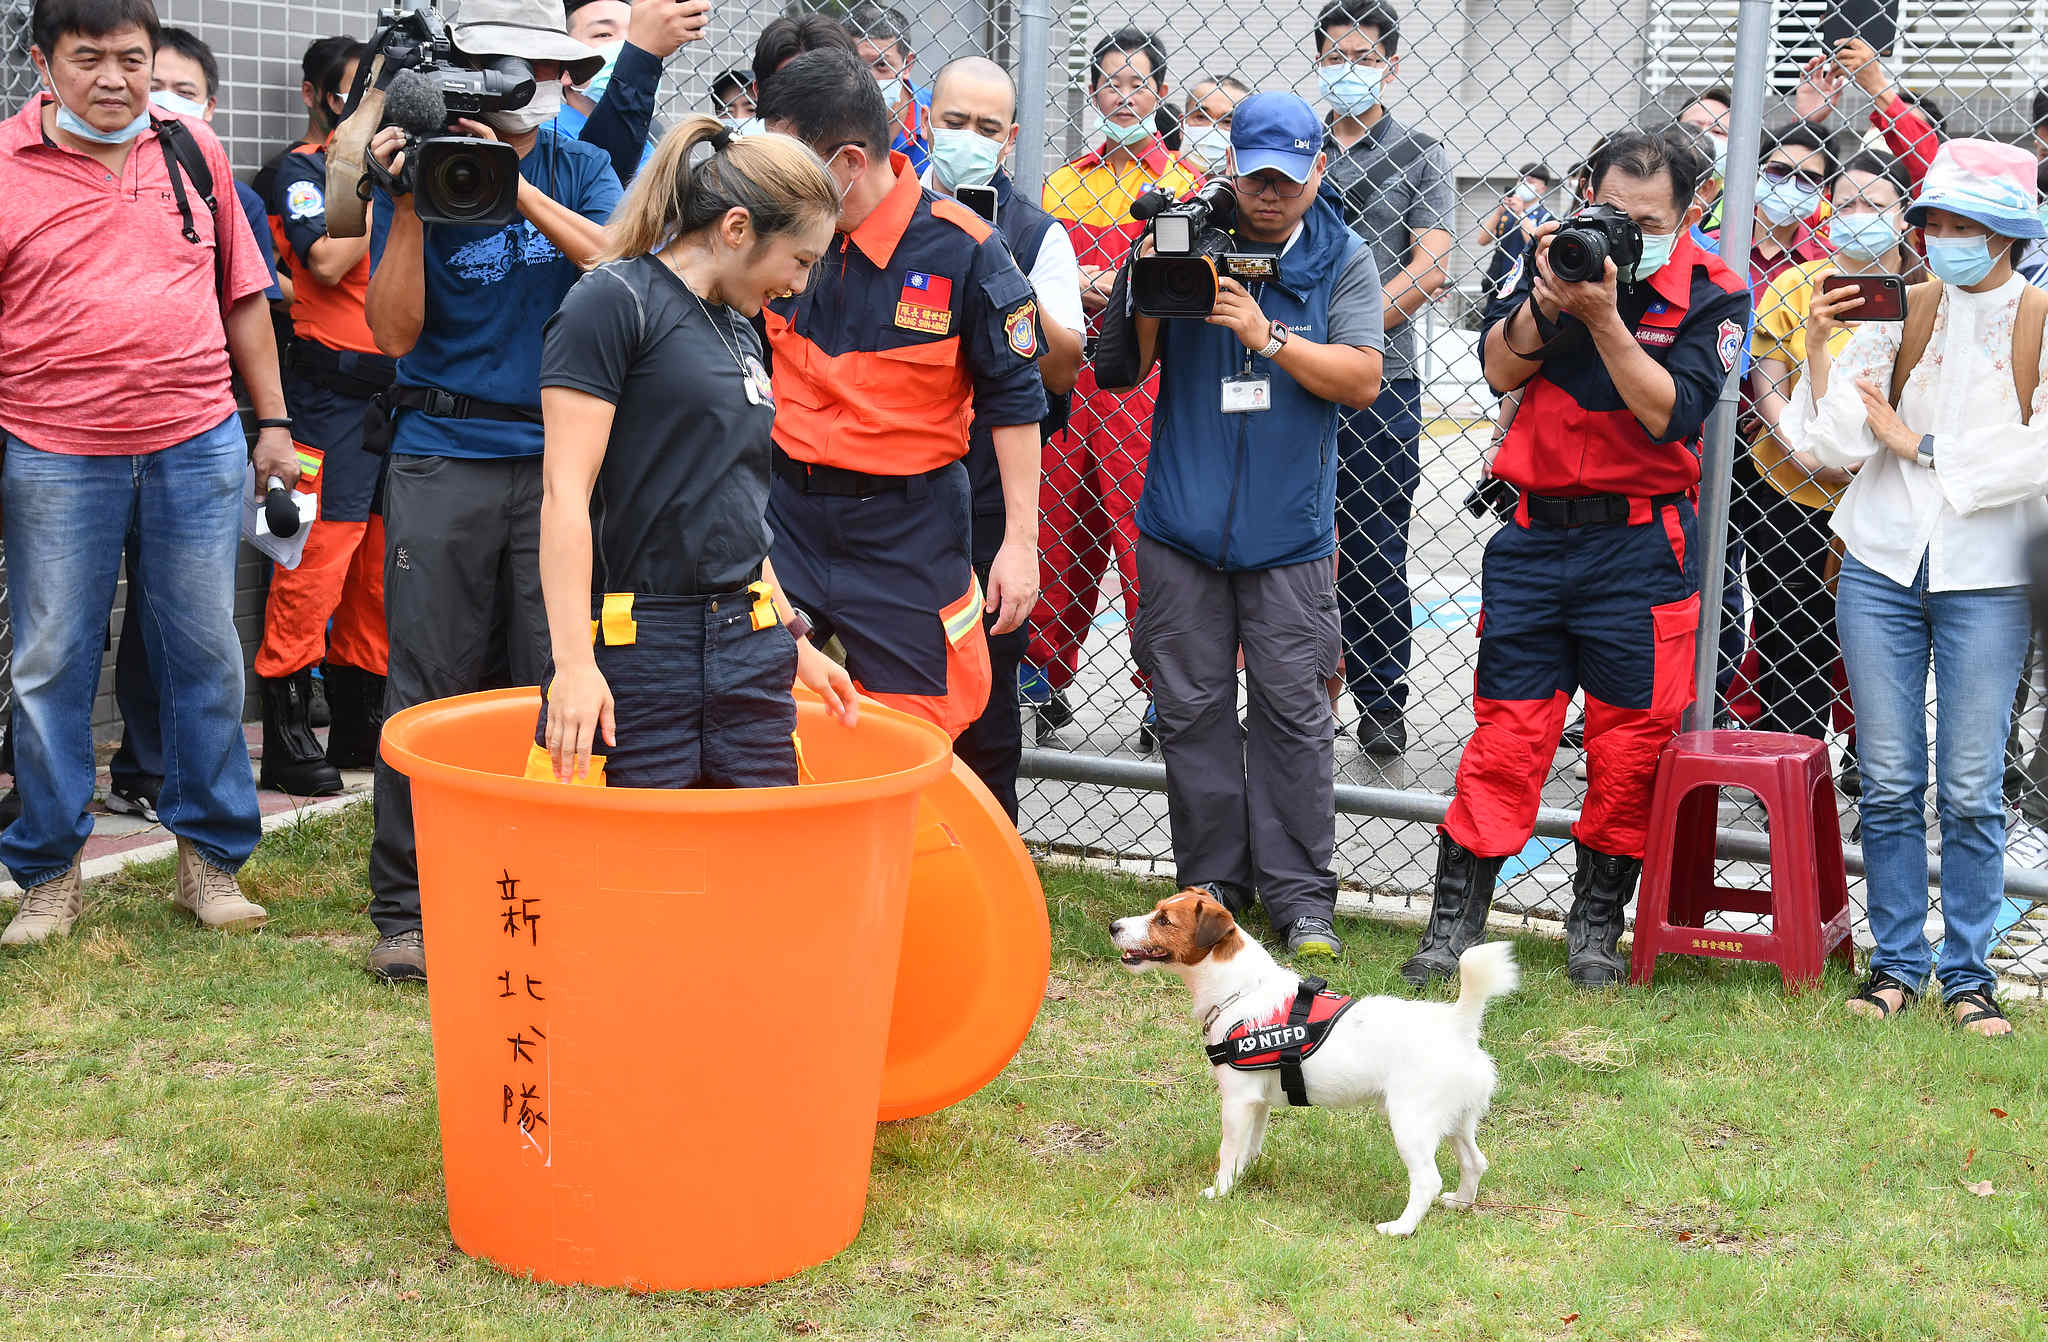 搜救犬浩克現場演練人臉搜索，模擬災難現場如何搜尋受困民眾。